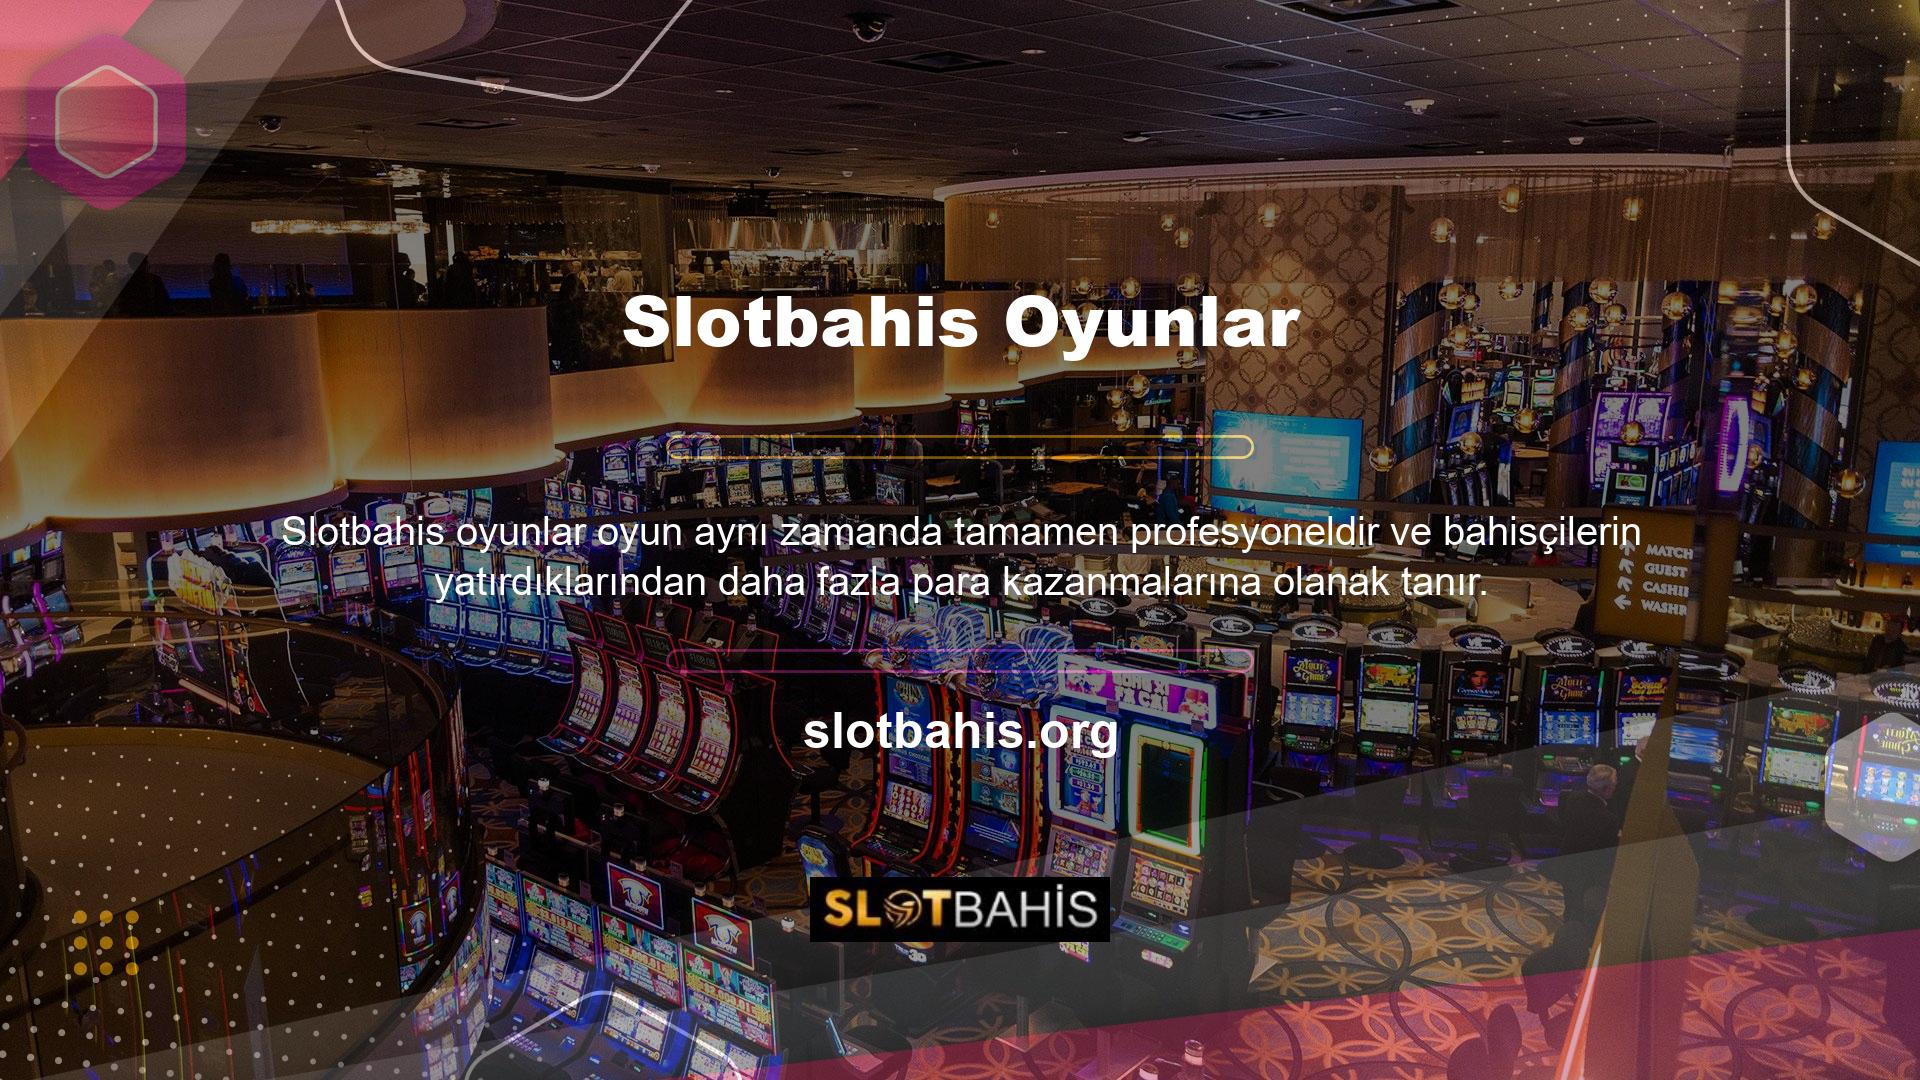 Slotbahis bahis sitesi, profesyonel hizmetleri ile bahis tutkunlarını her geçen gün daha kazançlı hale getiriyor